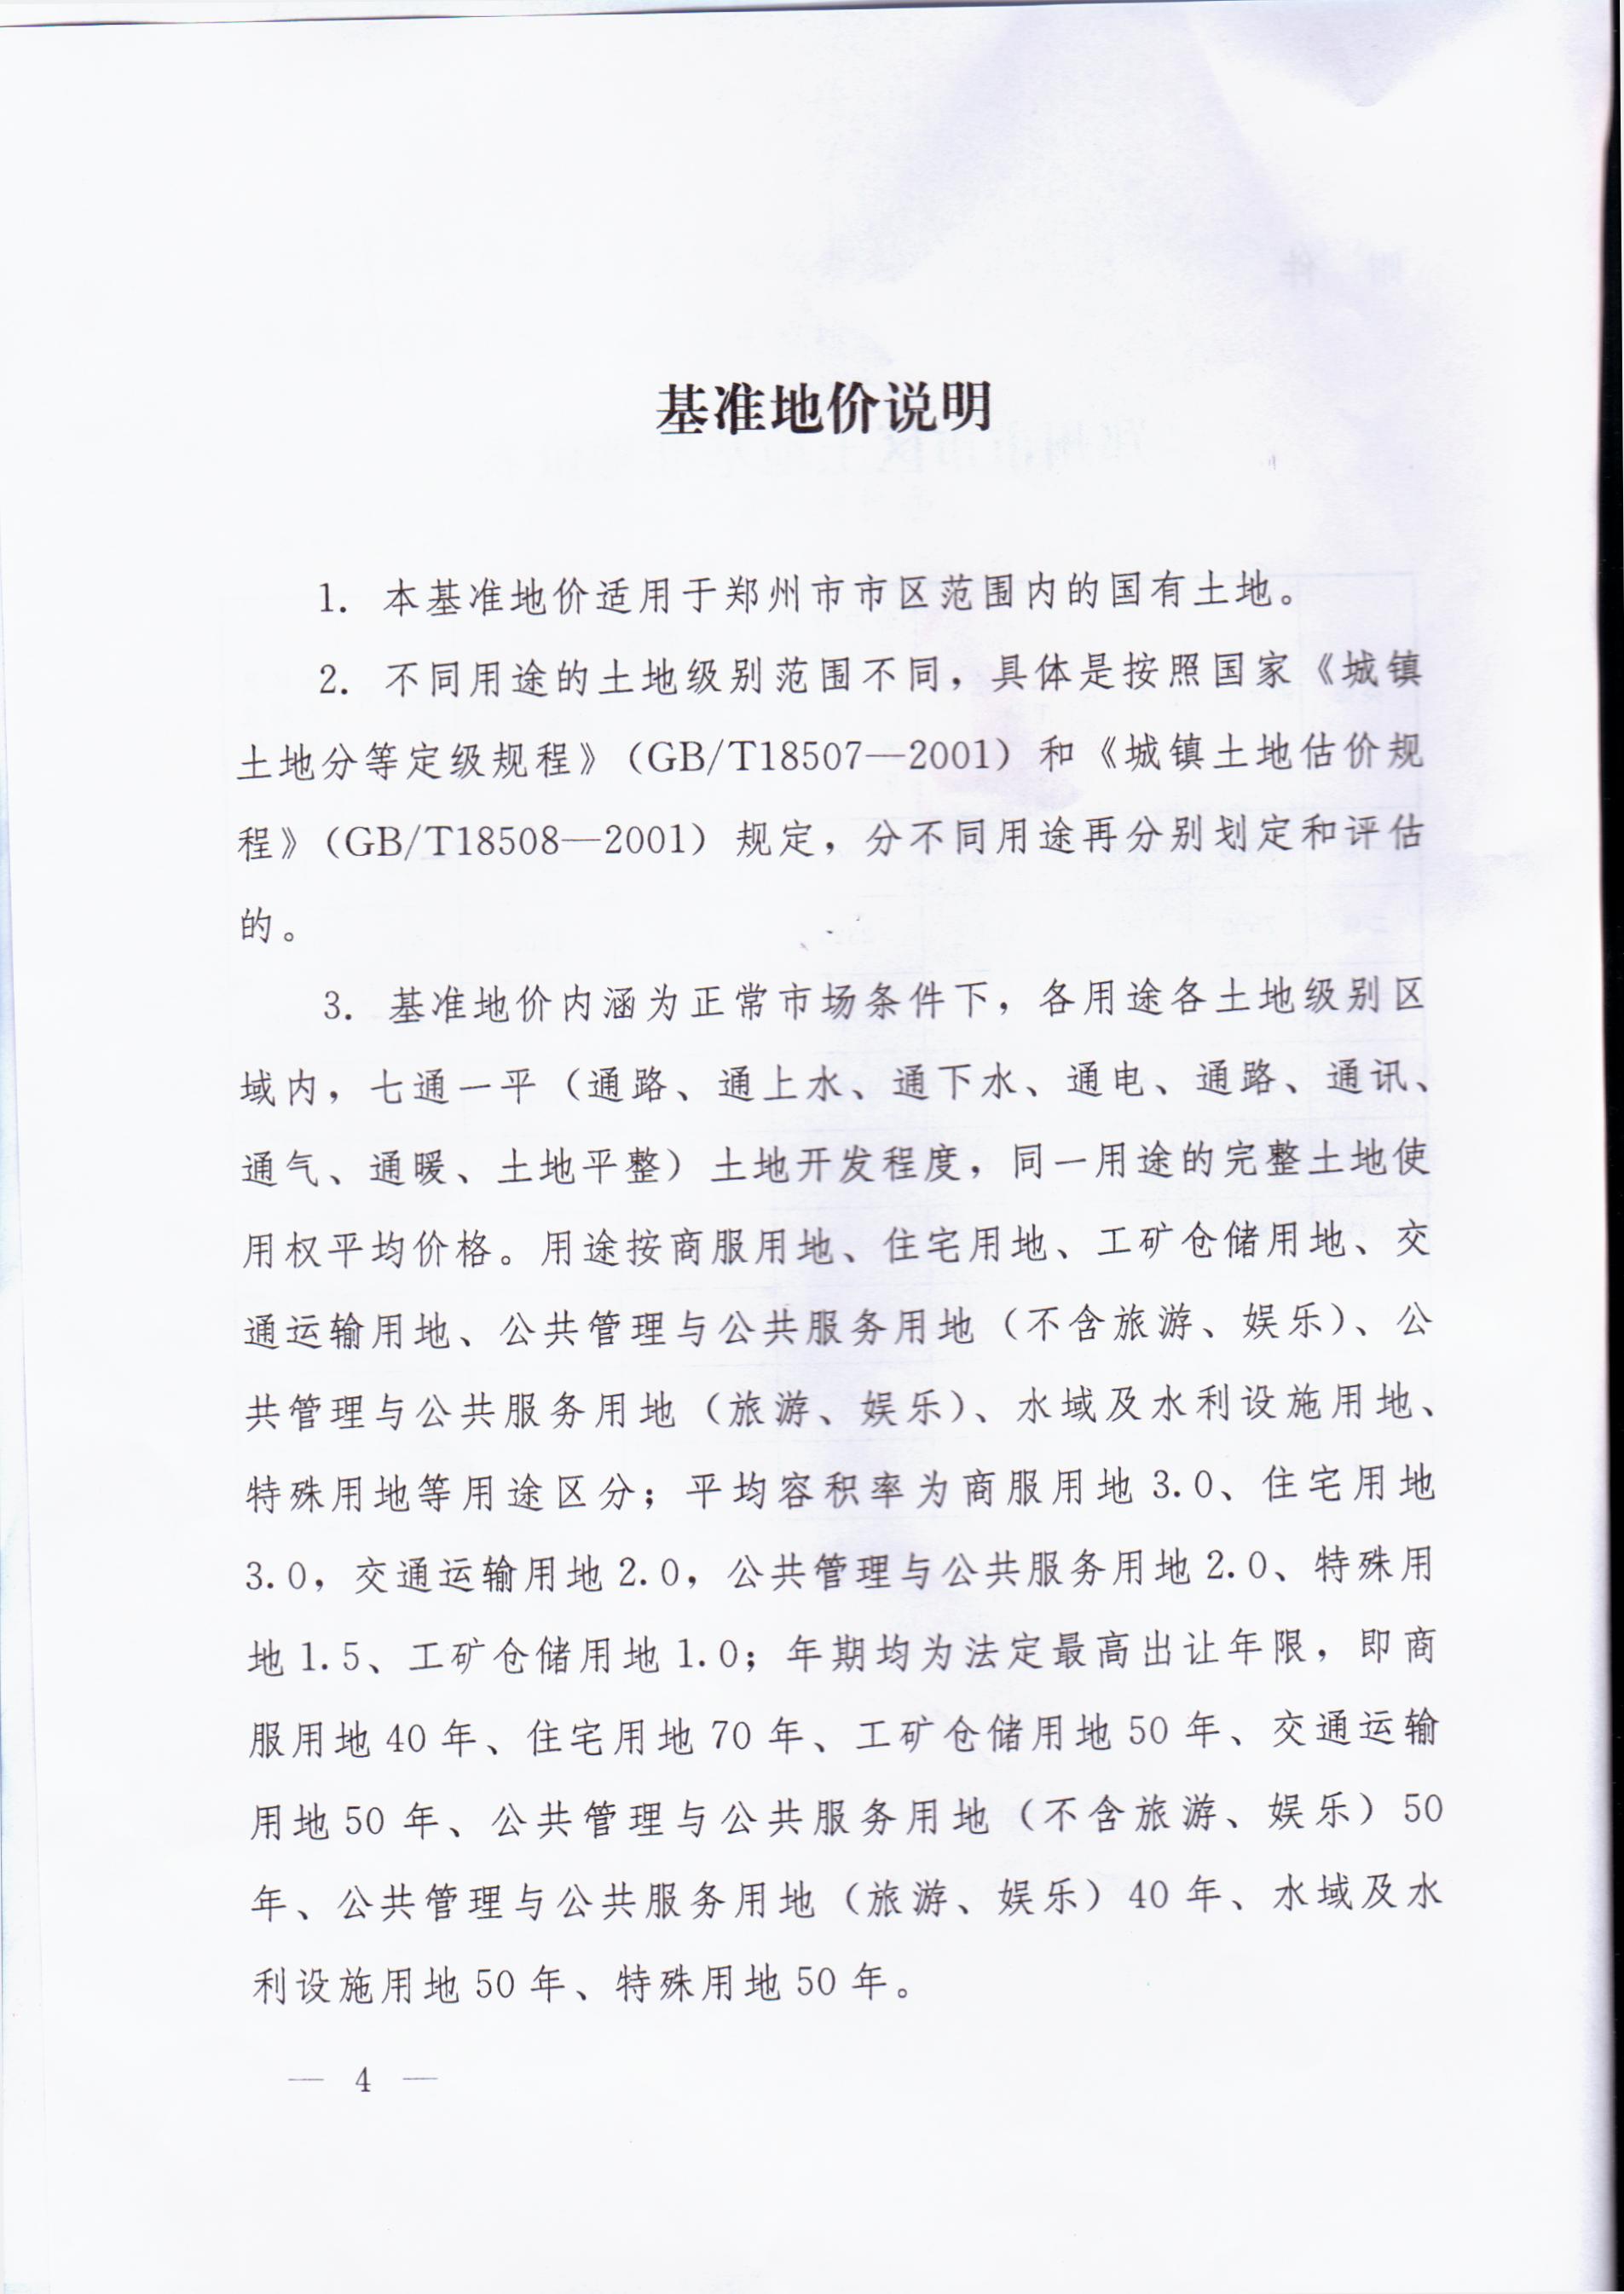 郑州市人民政府关于公布我市市区土地级别与基准地价的通知